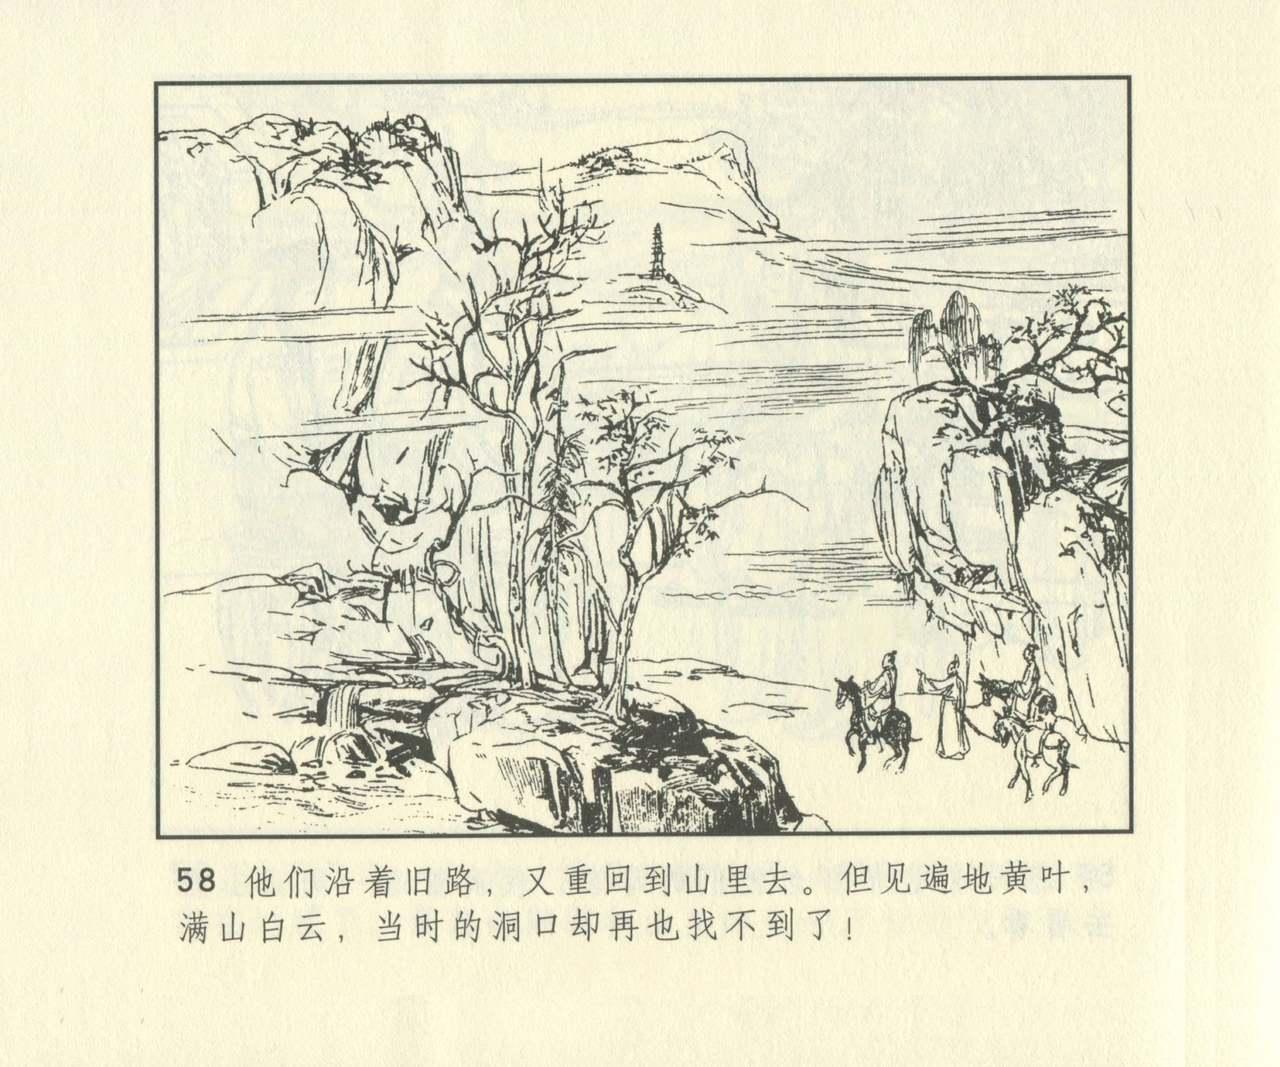 聊斋志异 张玮等绘 天津人民美术出版社 卷二十一 ~ 三十 674